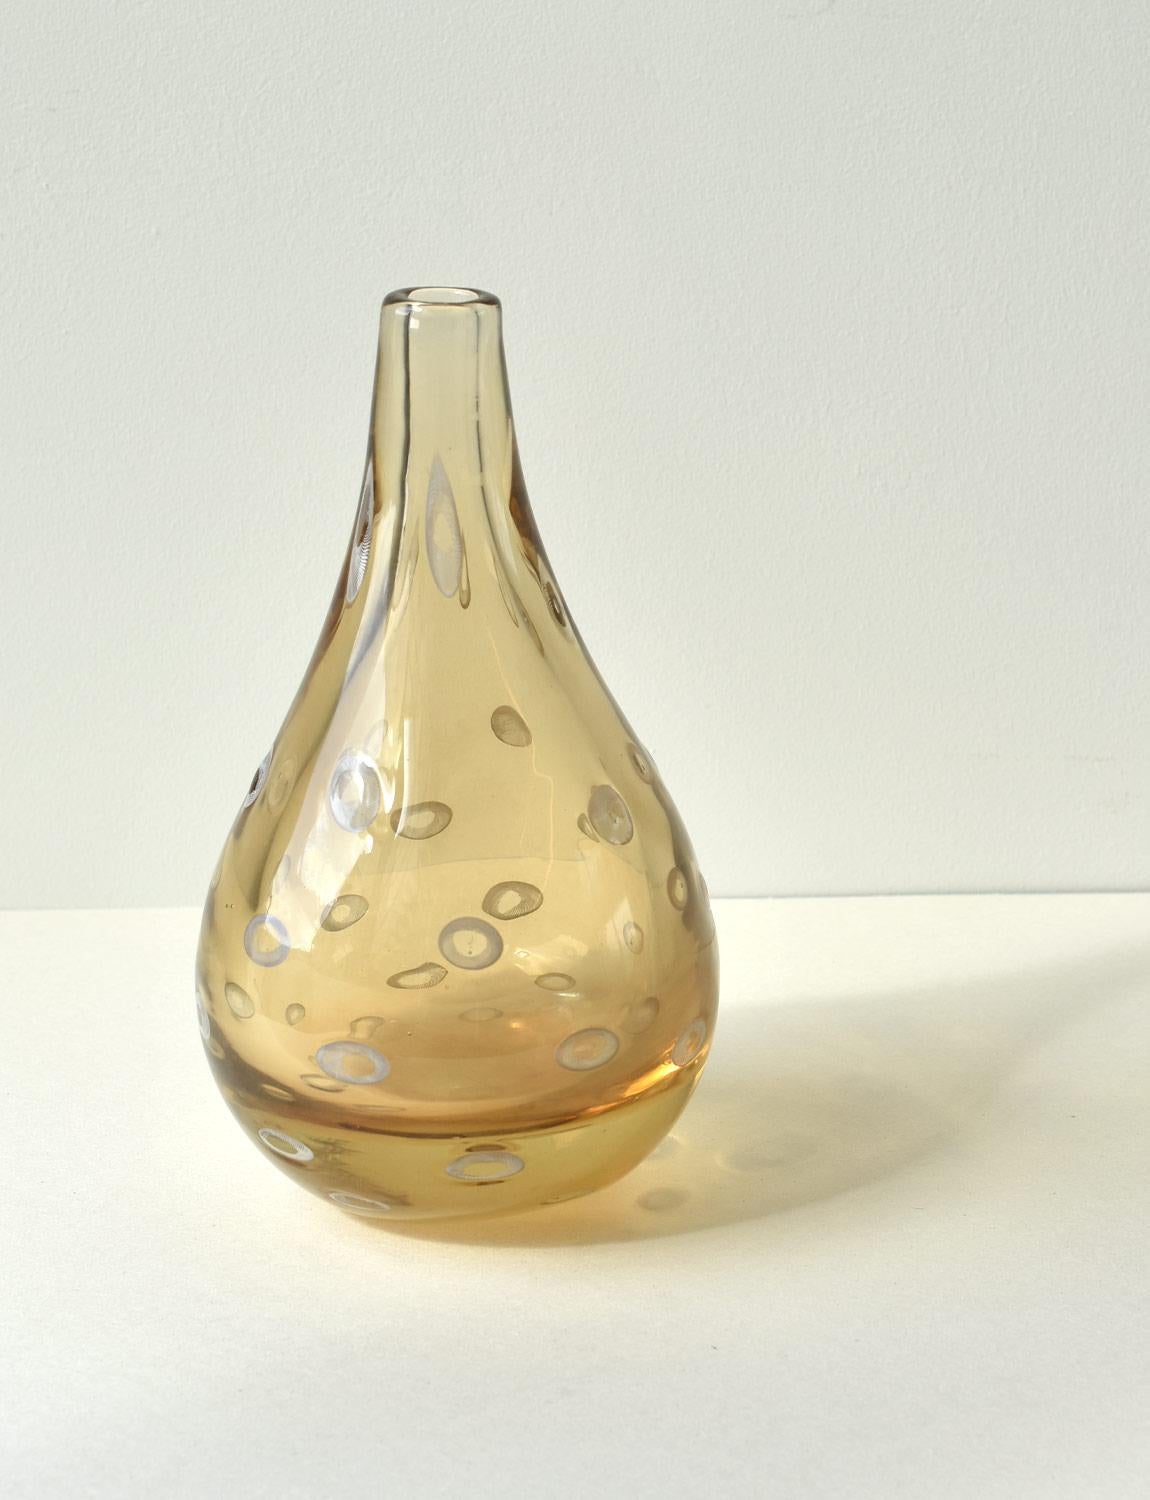 Ce vase exceptionnel en verre de Murano a été fabriqué à Venise par Pauly & Co dans les années 1950. Ce vase est d'une couleur pêche dorée exquise et est décoré de Murrine blanche. Les murrines sont des motifs ou des images réalisés dans des cannes